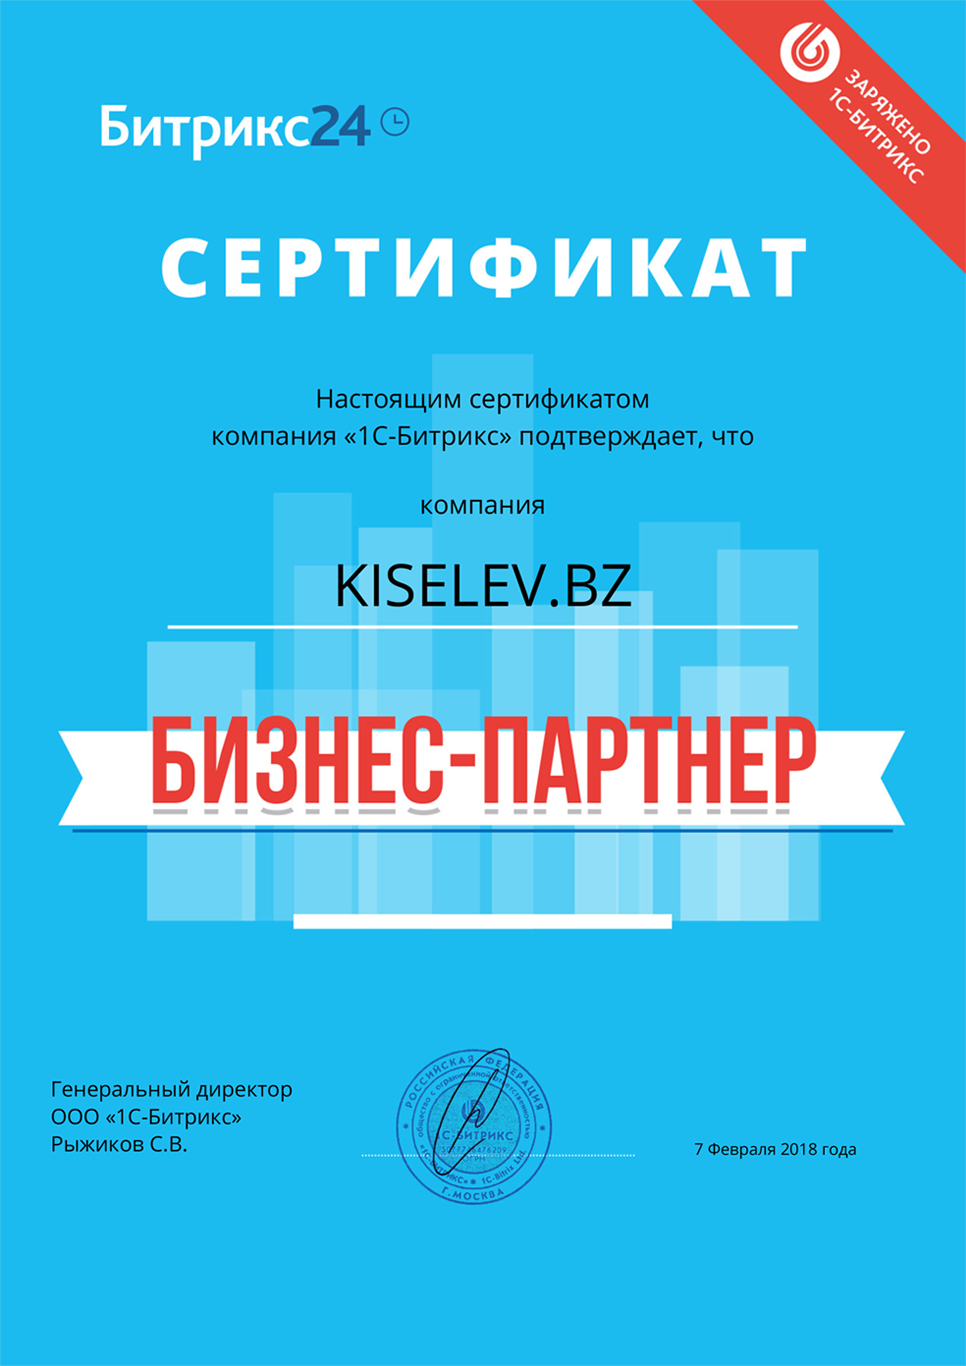 Сертификат партнёра по АМОСРМ в Щербинке